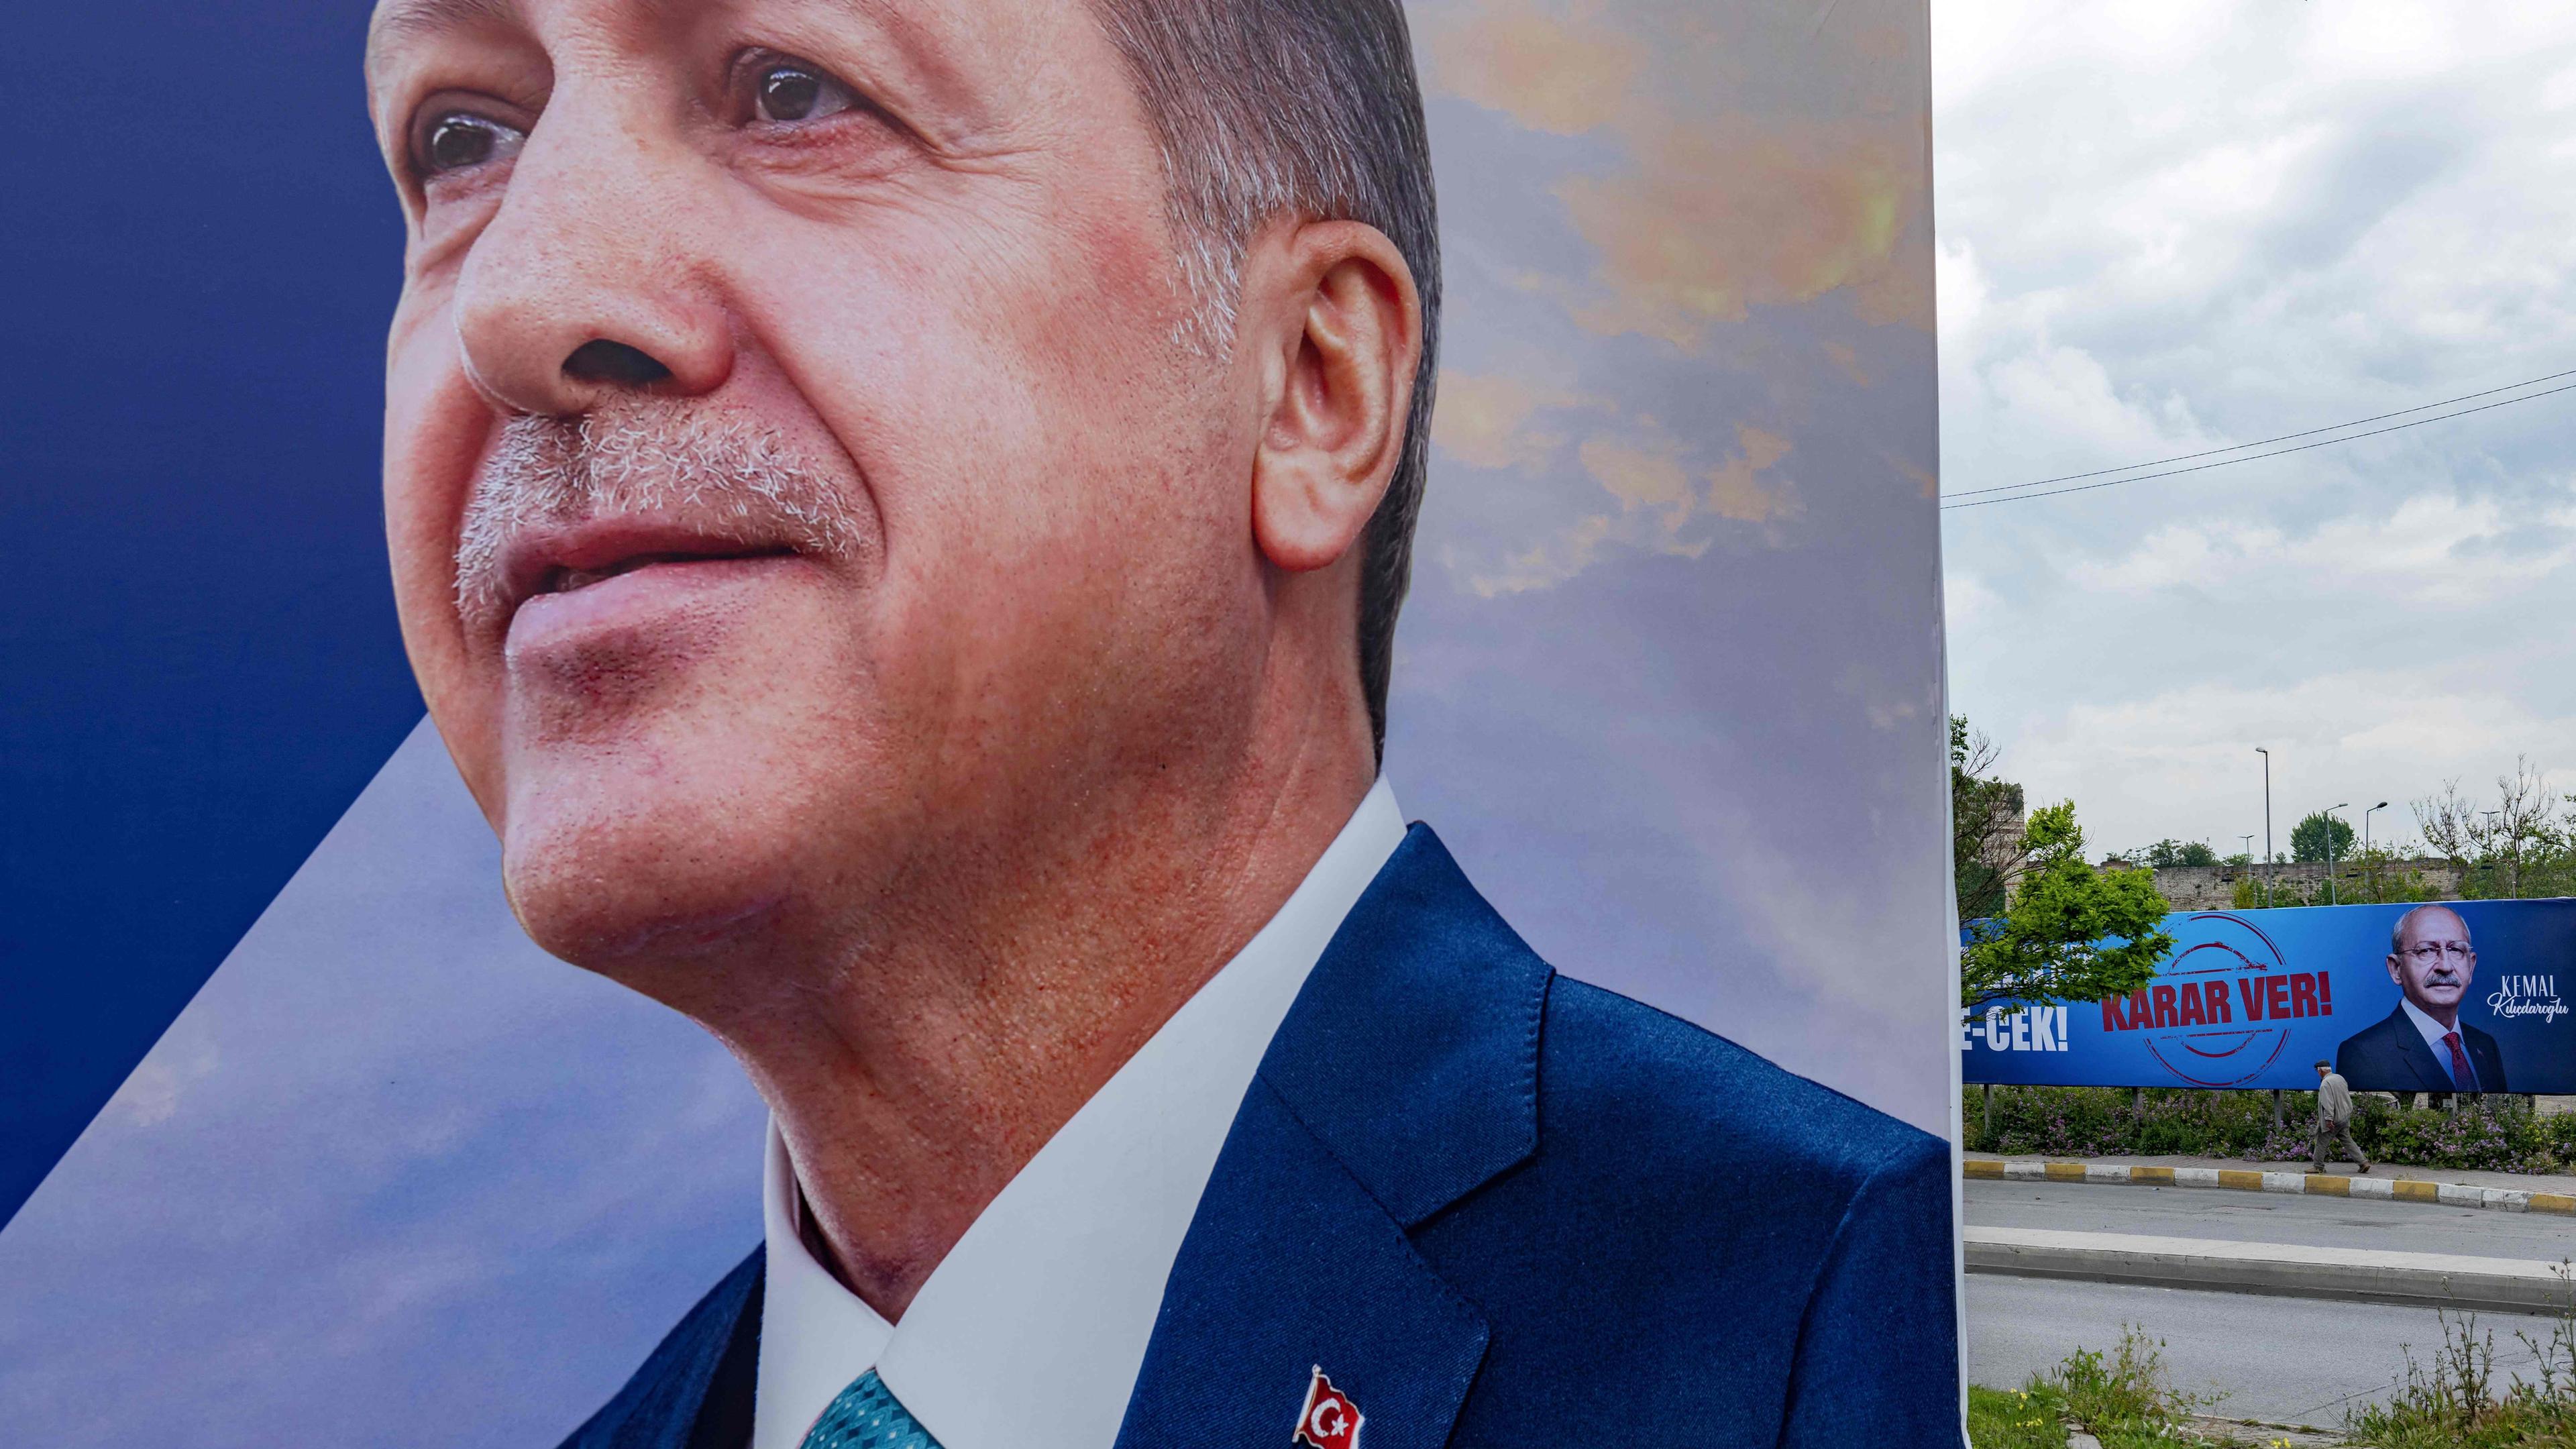 Ein Wahlplakat von Recep Tayyip Erdogan im Vordergrund. Im Hintergrund ein Plakat seines Gegners.